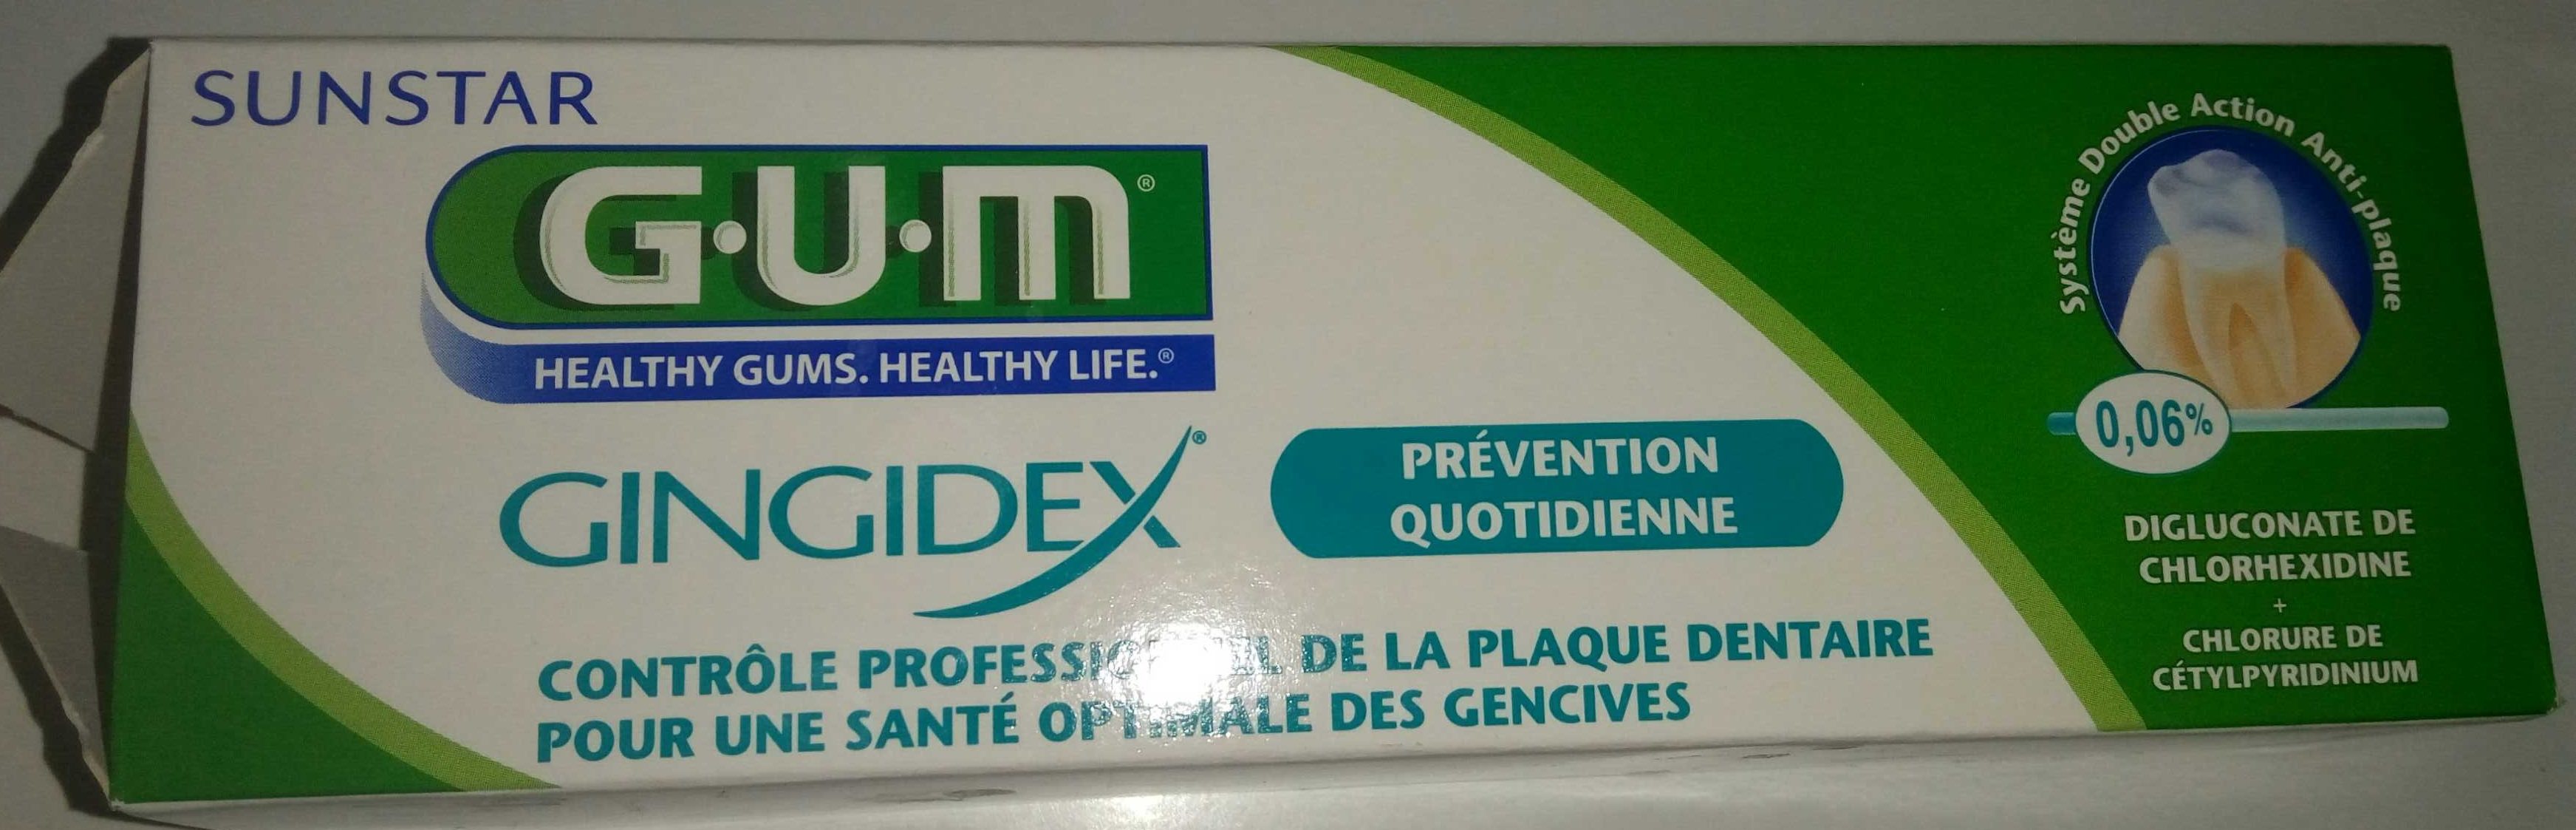 Gum gingidex - Product - fr